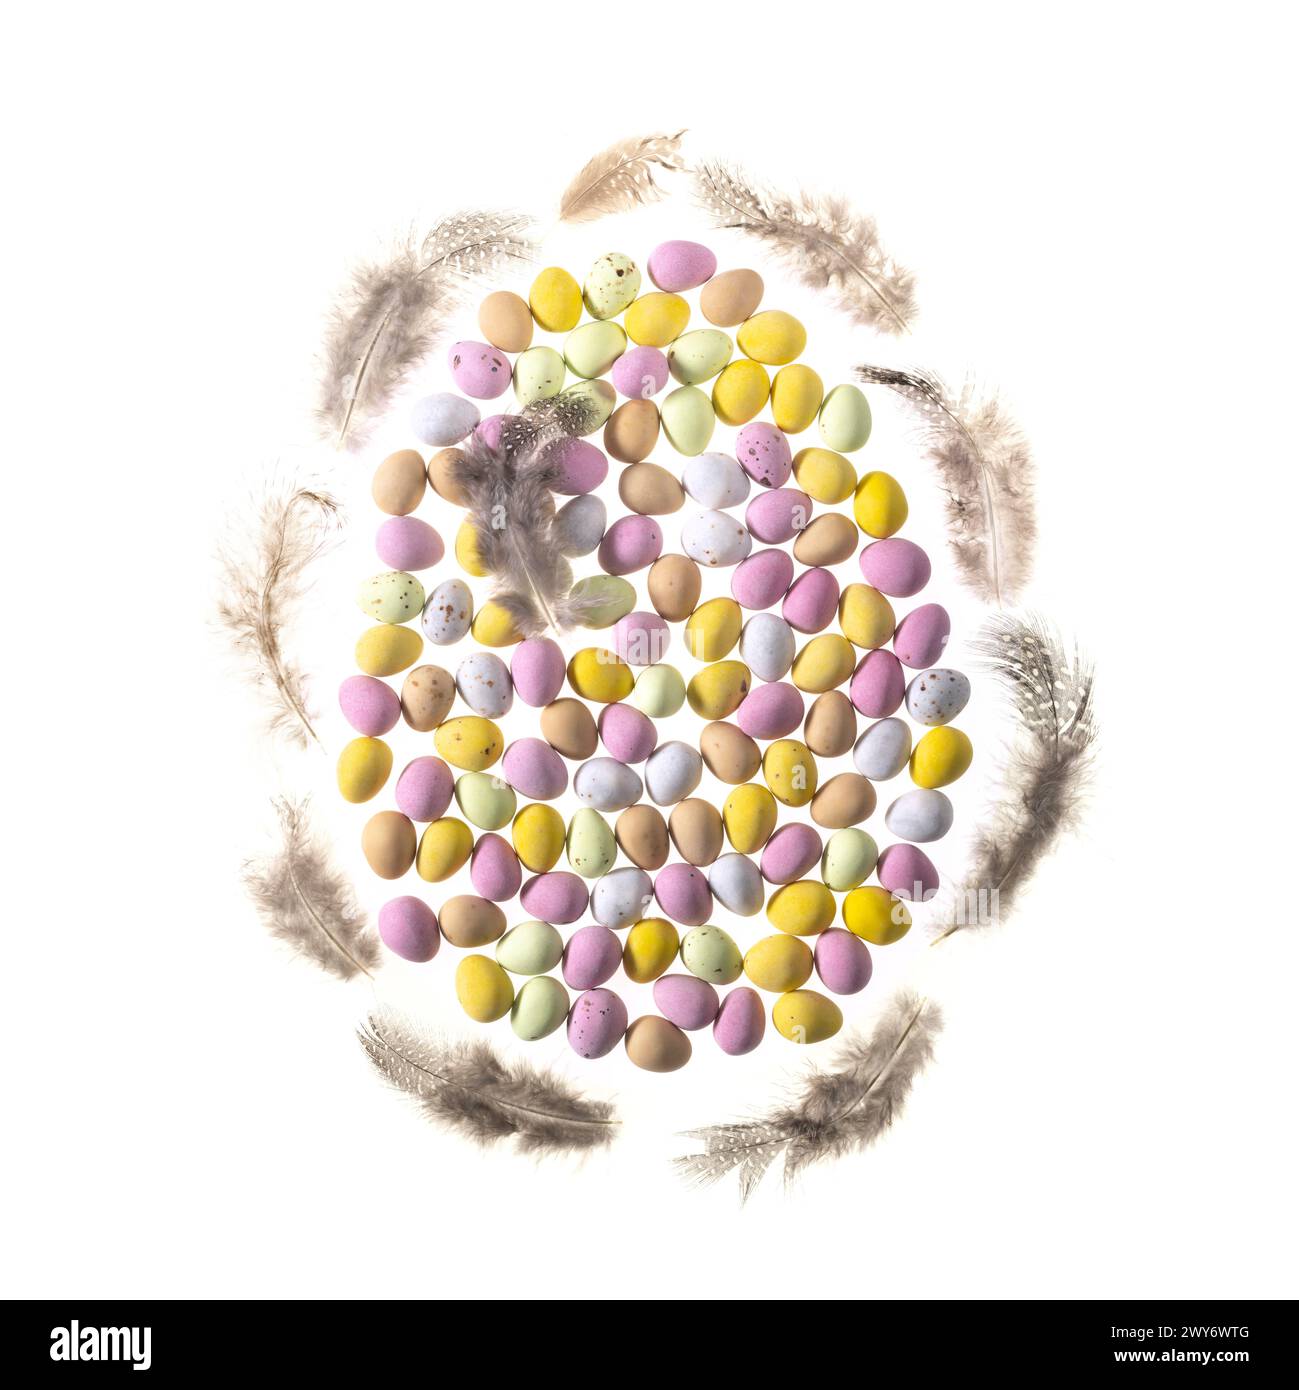 Mini oeufs enrobés de sucre de couleur pastel disposés en forme d'oeuf bordé de plumes sur fond blanc. Banque D'Images